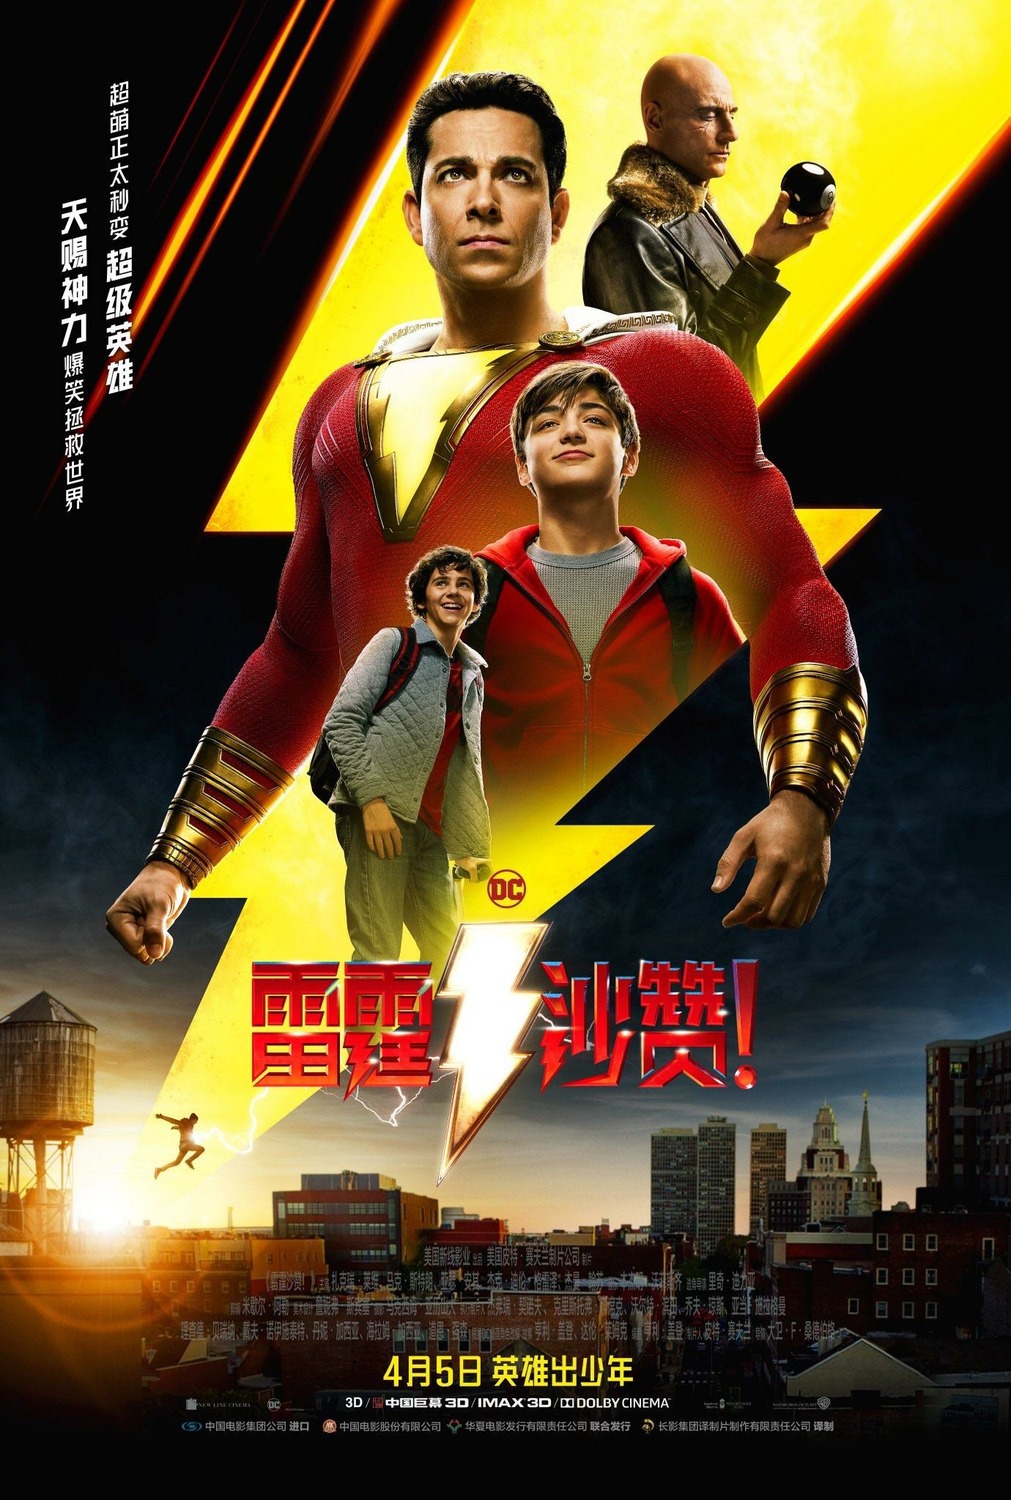 Extra Large Movie Poster Image for Shazam! (#5 of 10)